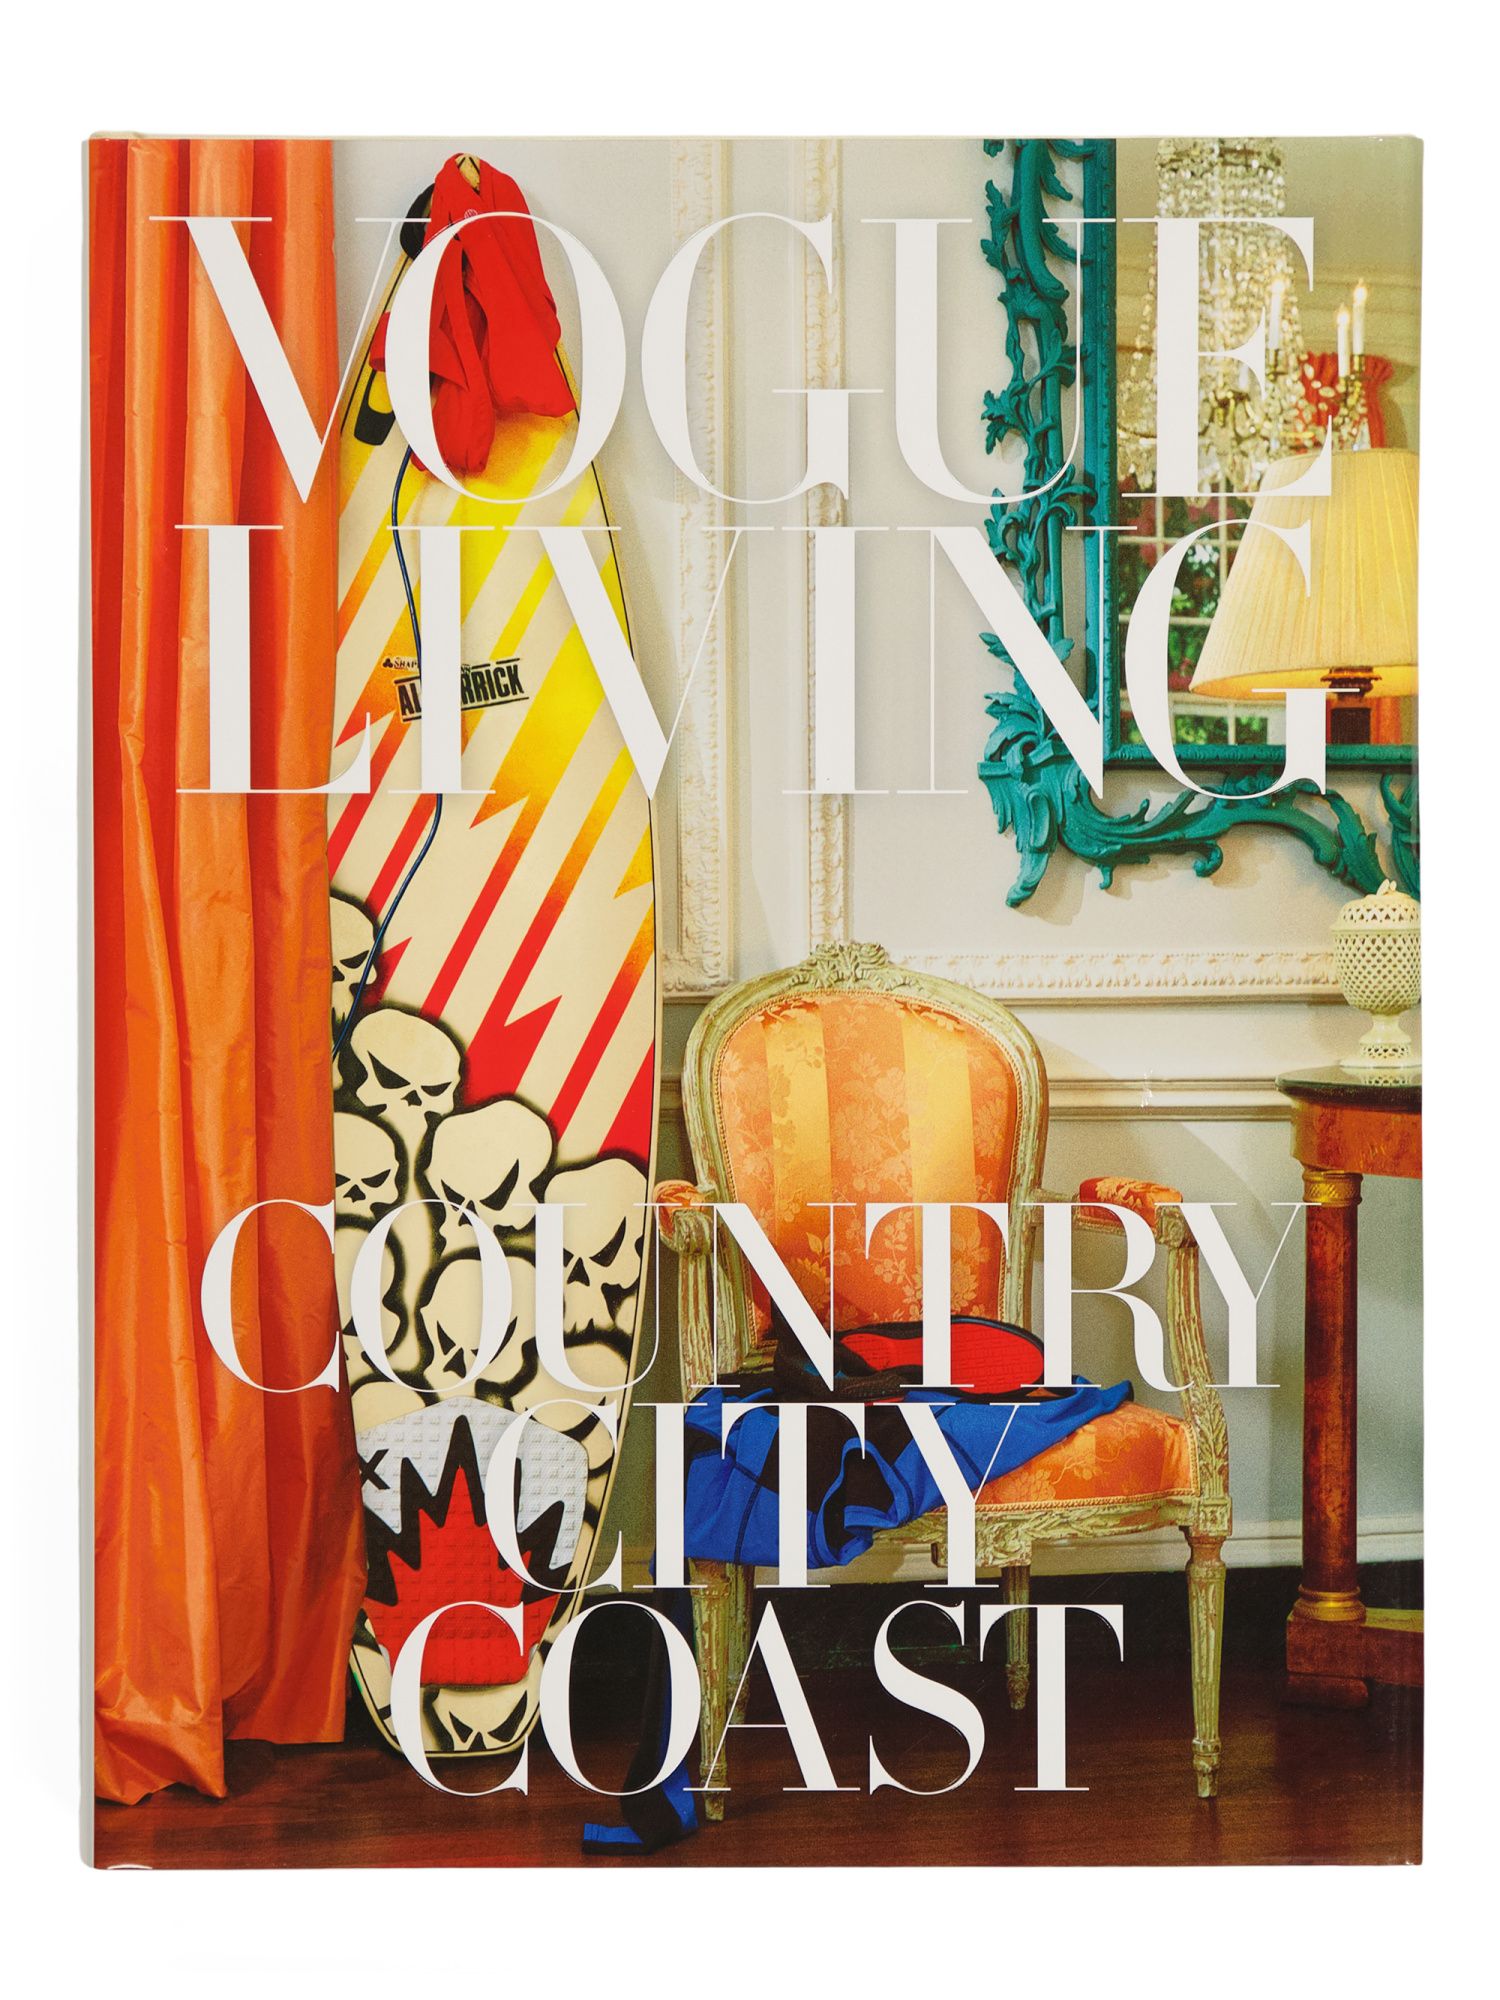 Vogue Living Country City | TJ Maxx